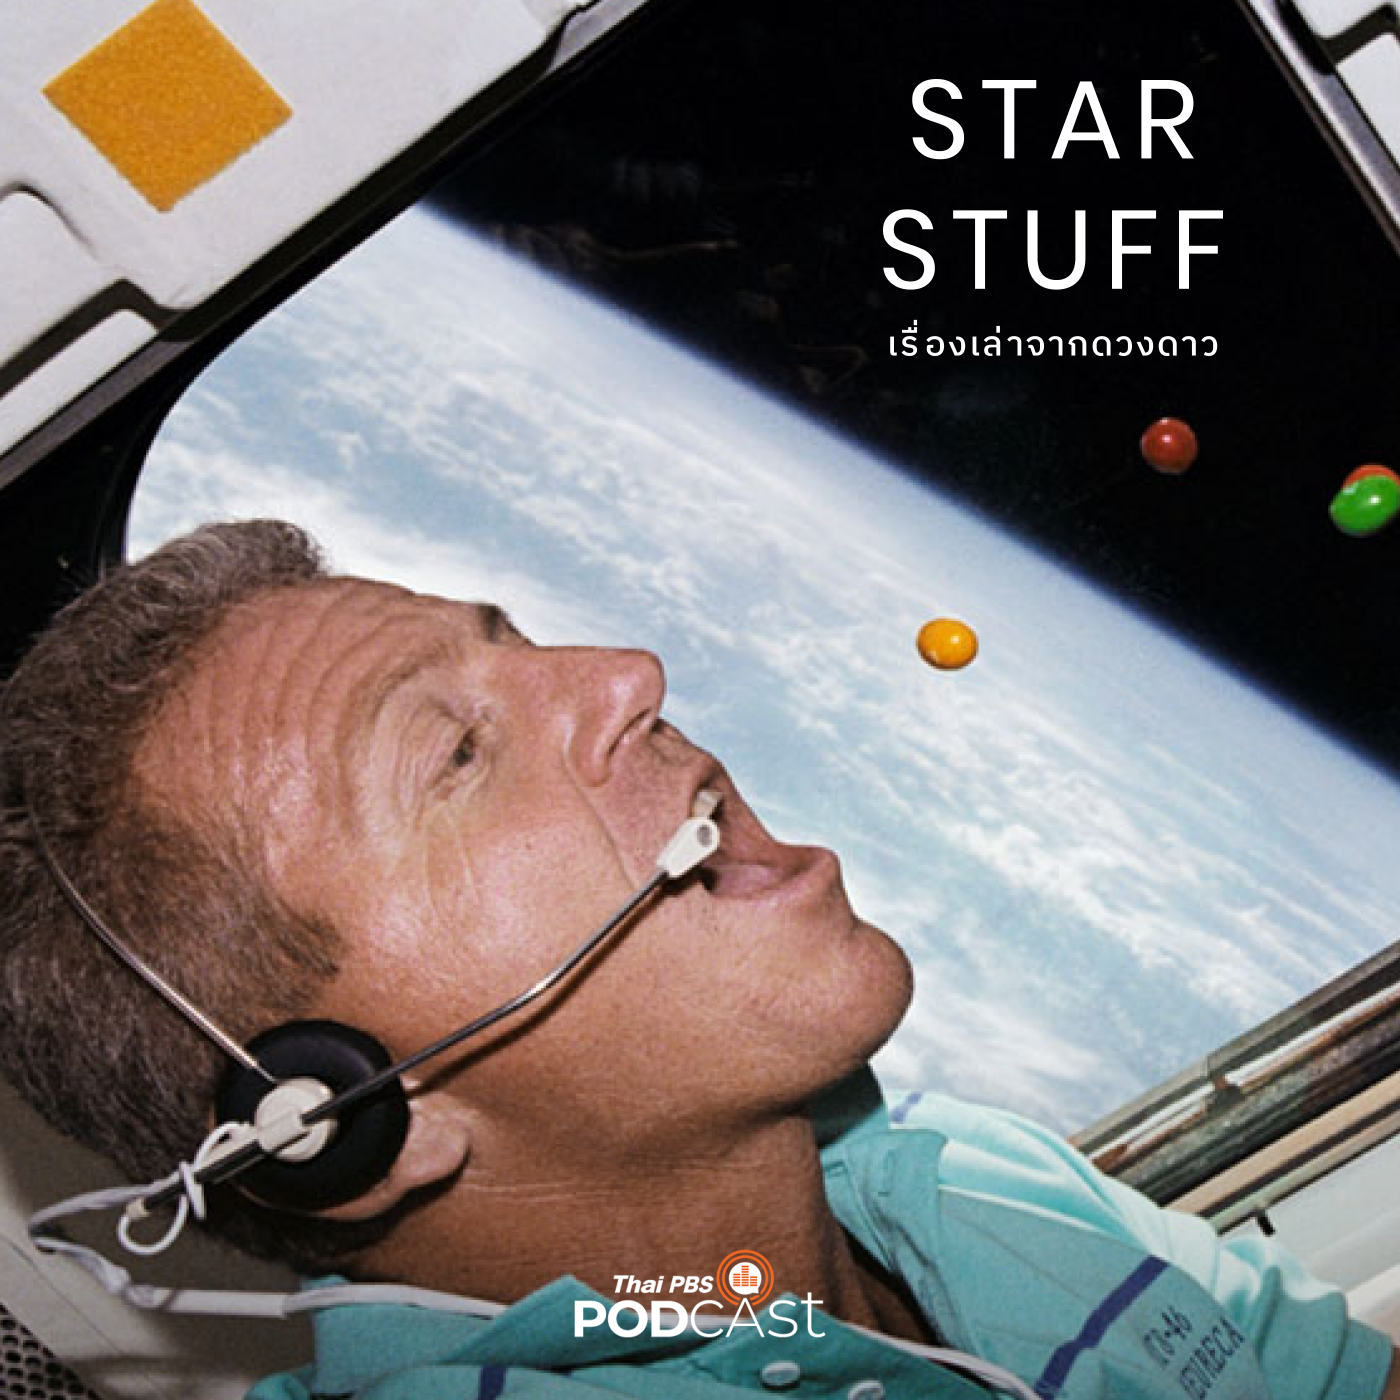 Starstuff เรื่องเล่าจากดวงดาว EP. 120: อาหารอวกาศ